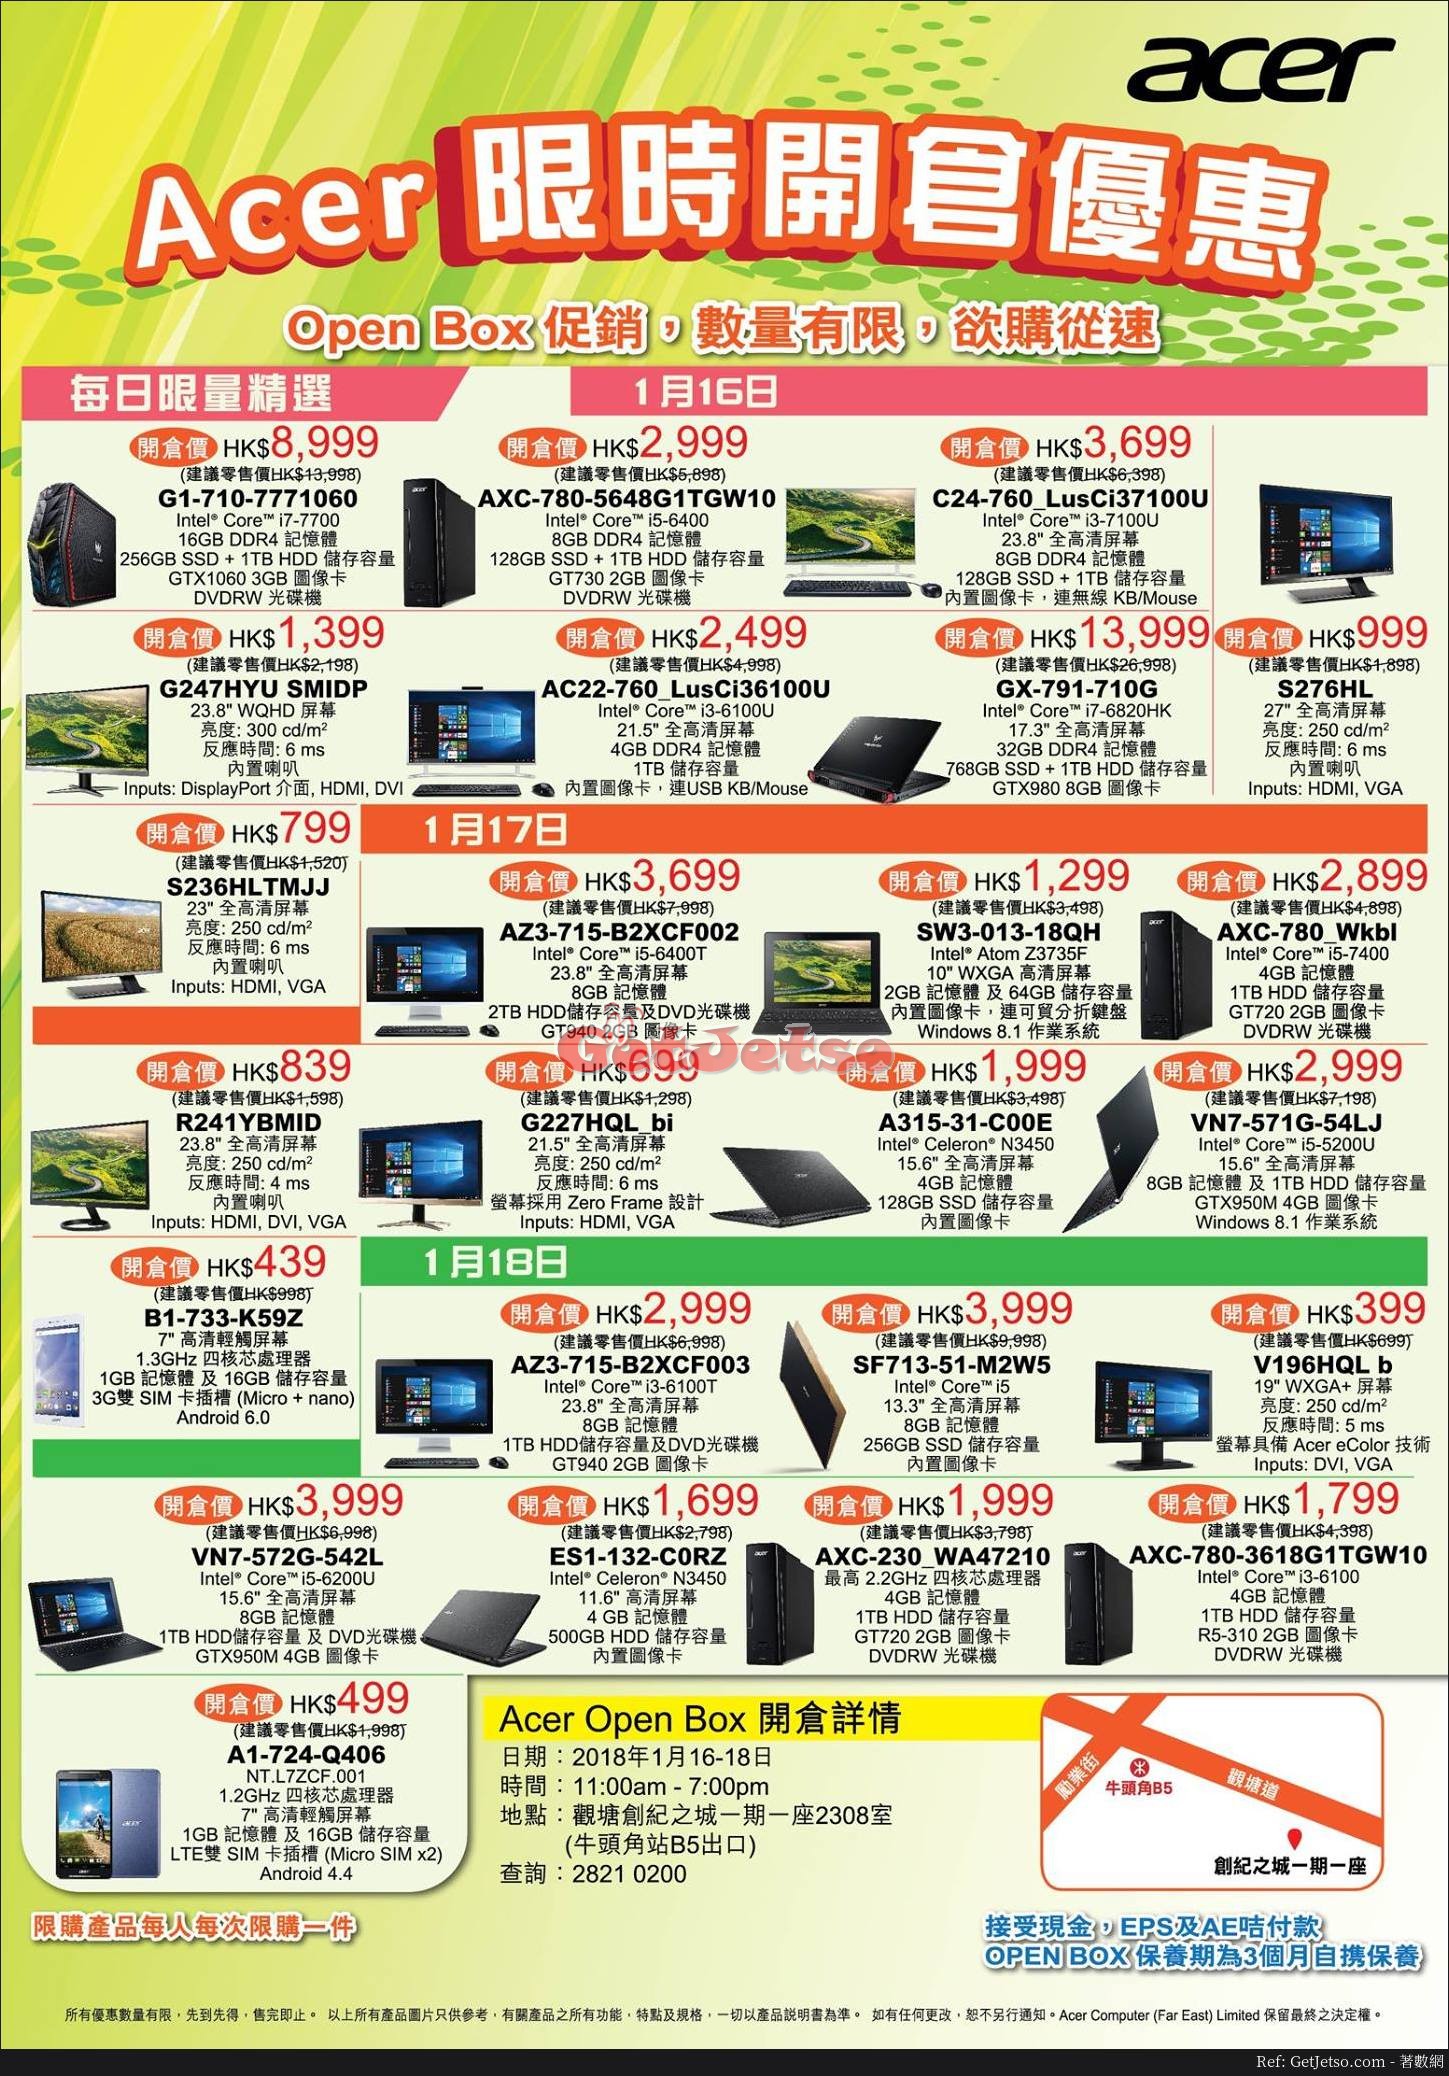 Acer 低至5折限時開倉優惠(18年1月16-18日)圖片1